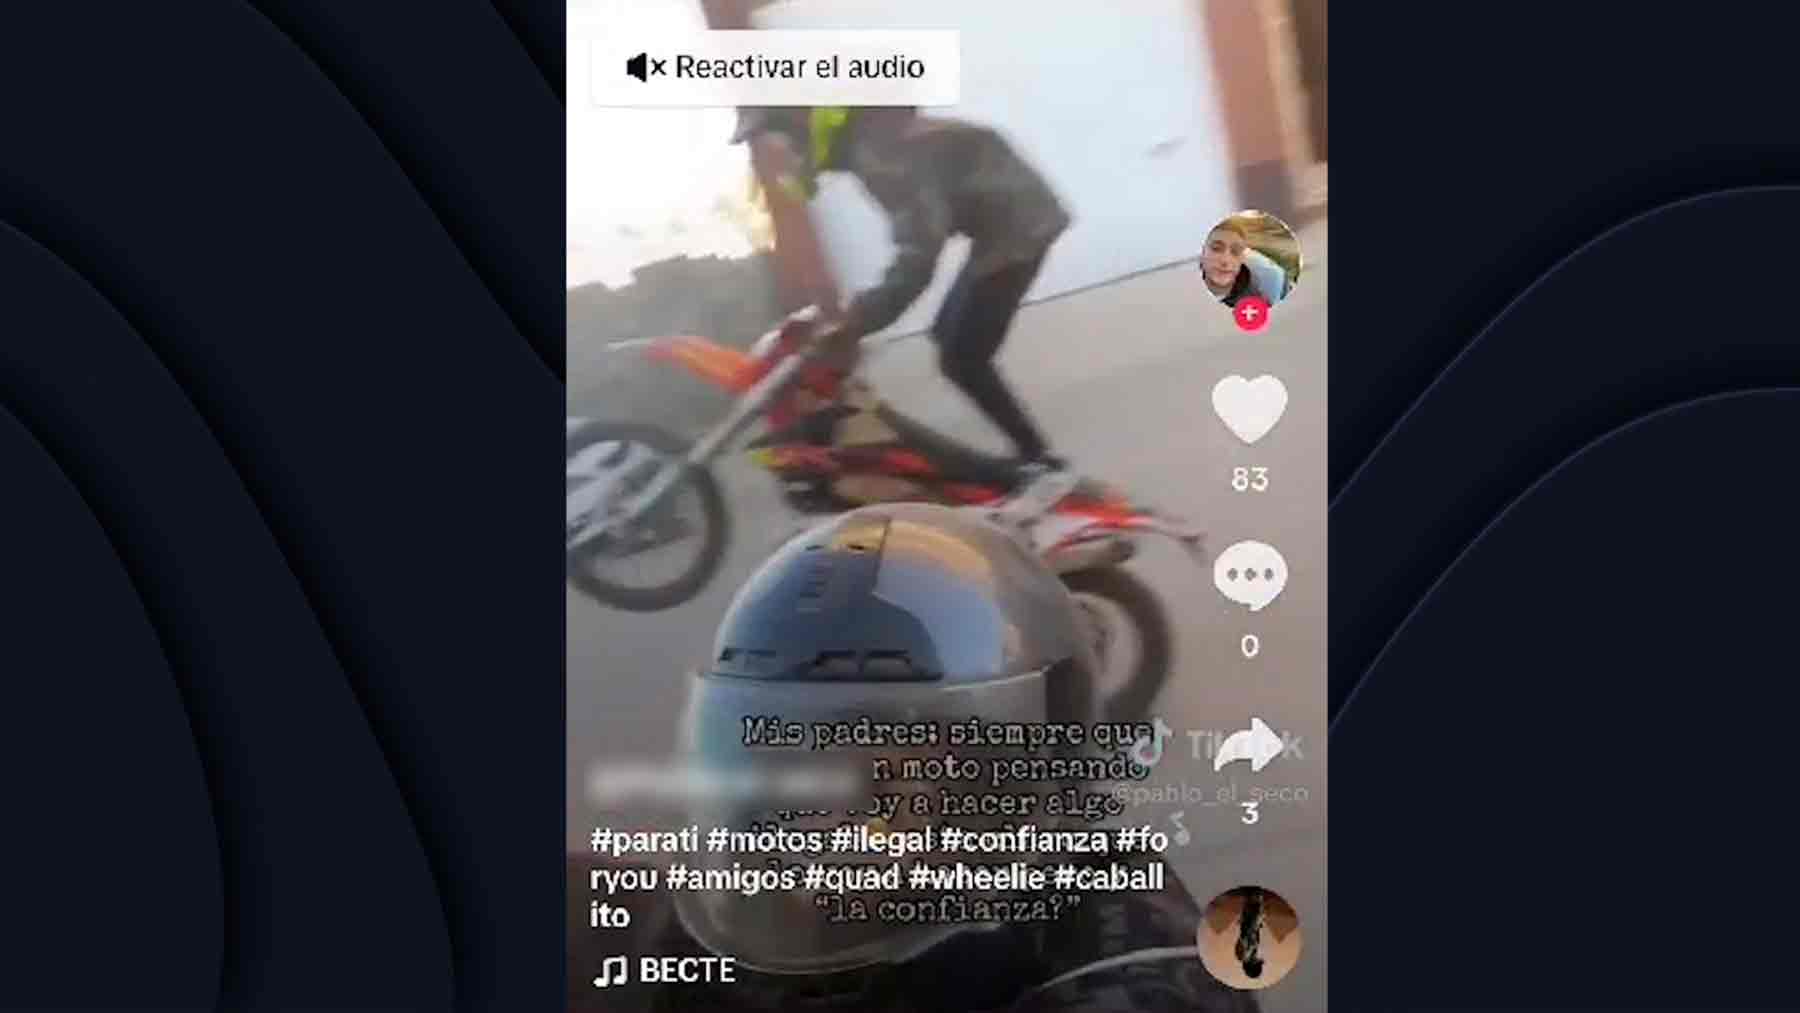 La Guardia Civil detiene a un motorista tras identificarle en los vídeos que publicaba en las redes